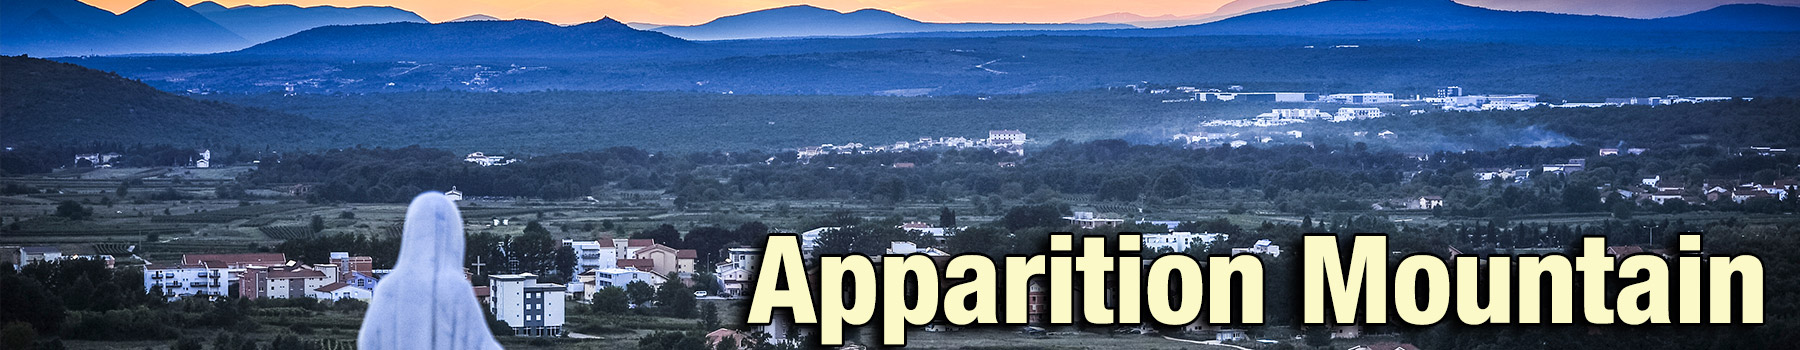 02-Apparition-Moutain-Village-View